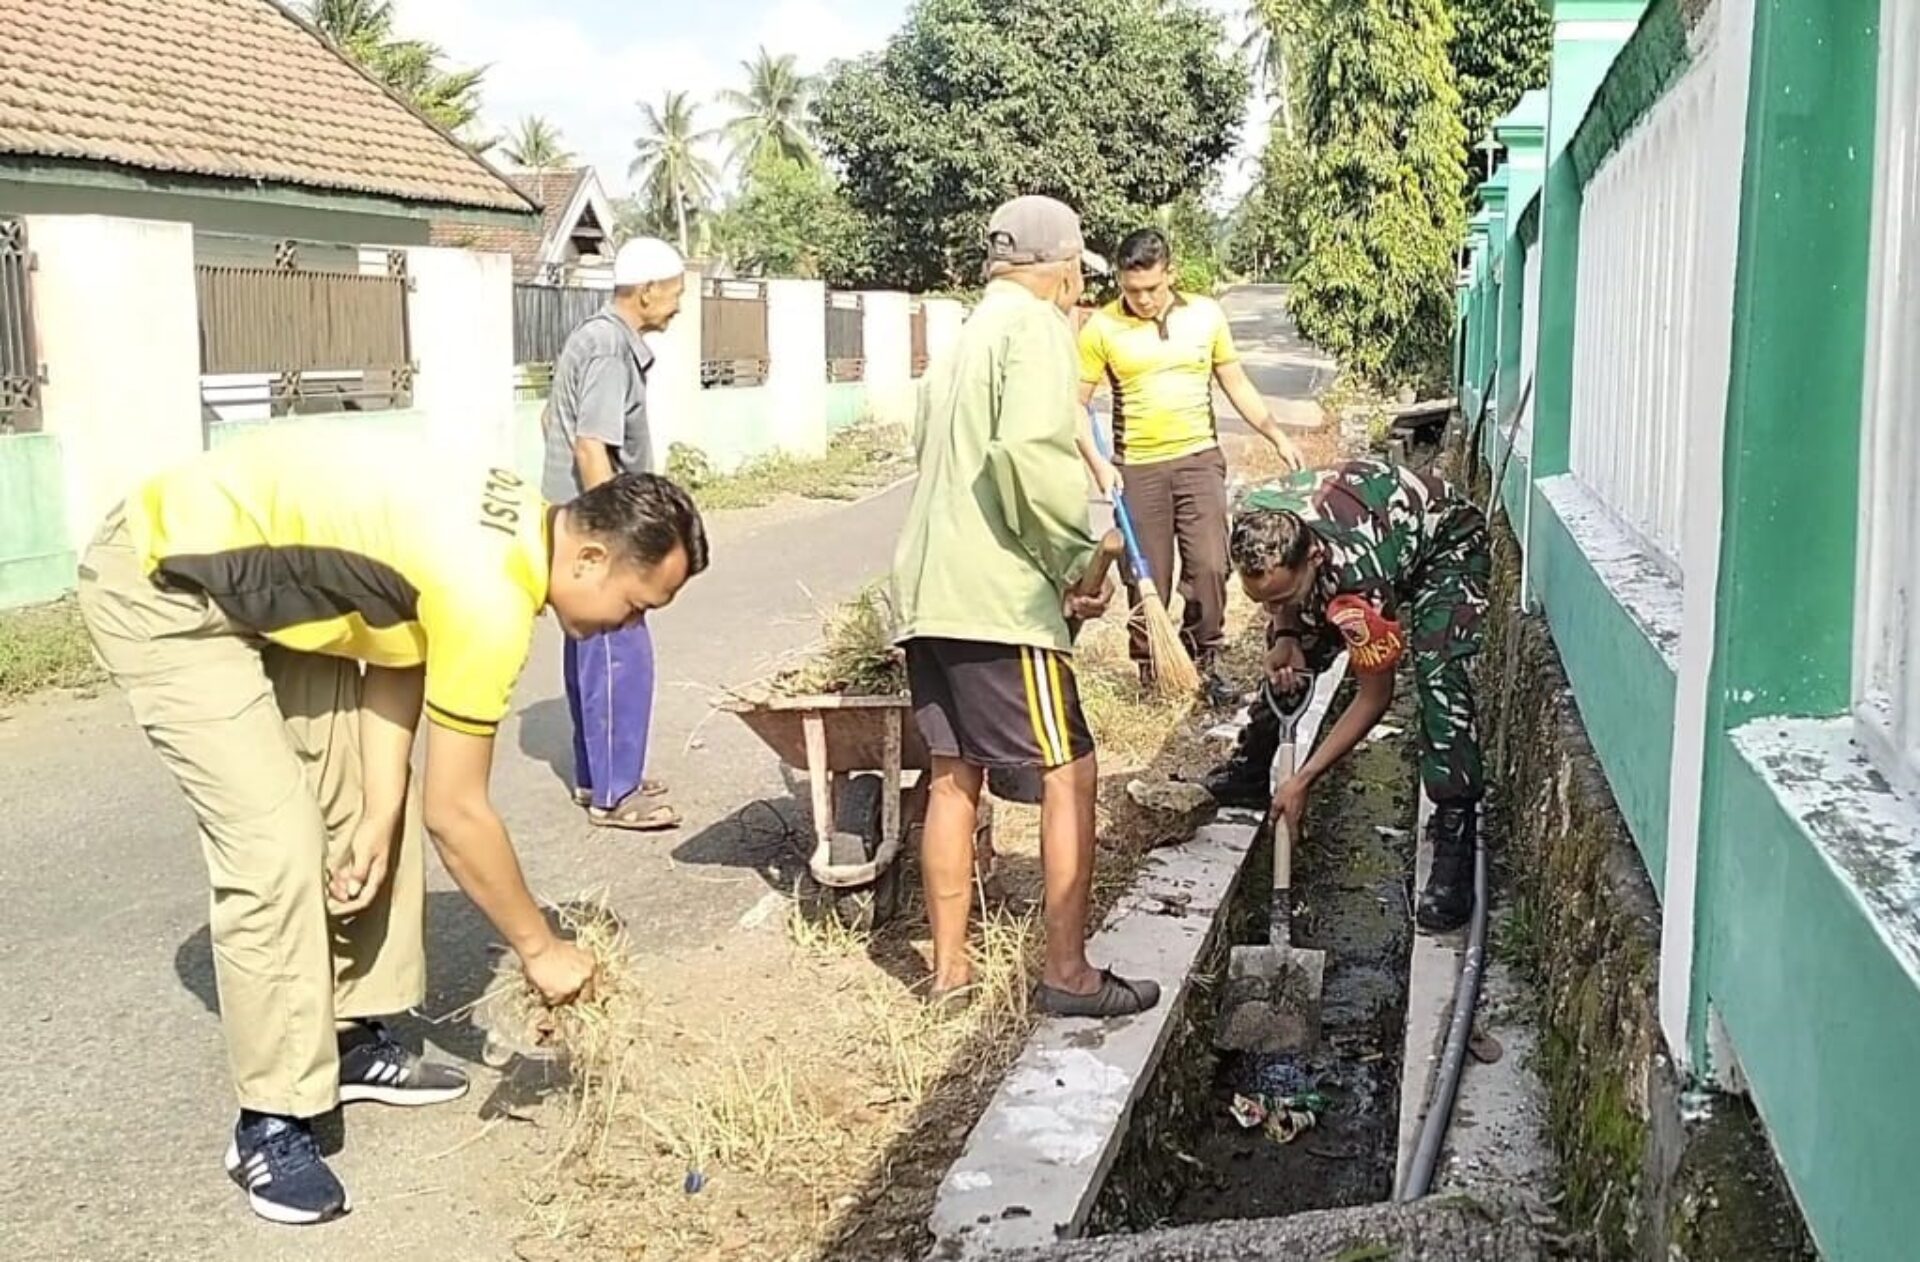 Sinergi Positif untuk Kebersihan Lingkungan: Babinsa dan Bhabinkamtibmas Bersatu Melawan Sampah di Desa Pulerejo